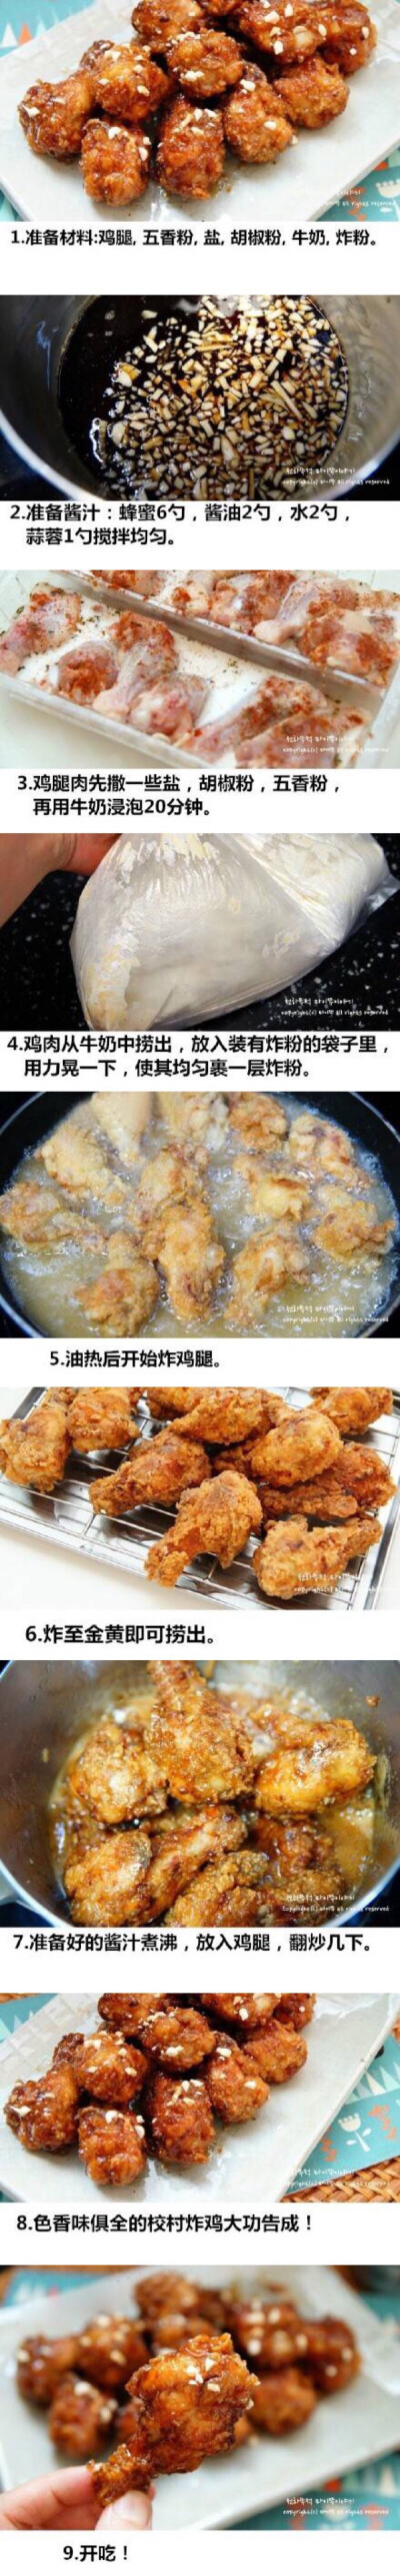 【韩国有名的校村炸鸡】韩剧中最常出现的炸鸡啤酒的搭配，炸鸡就该这么吃，好吃炸了~~